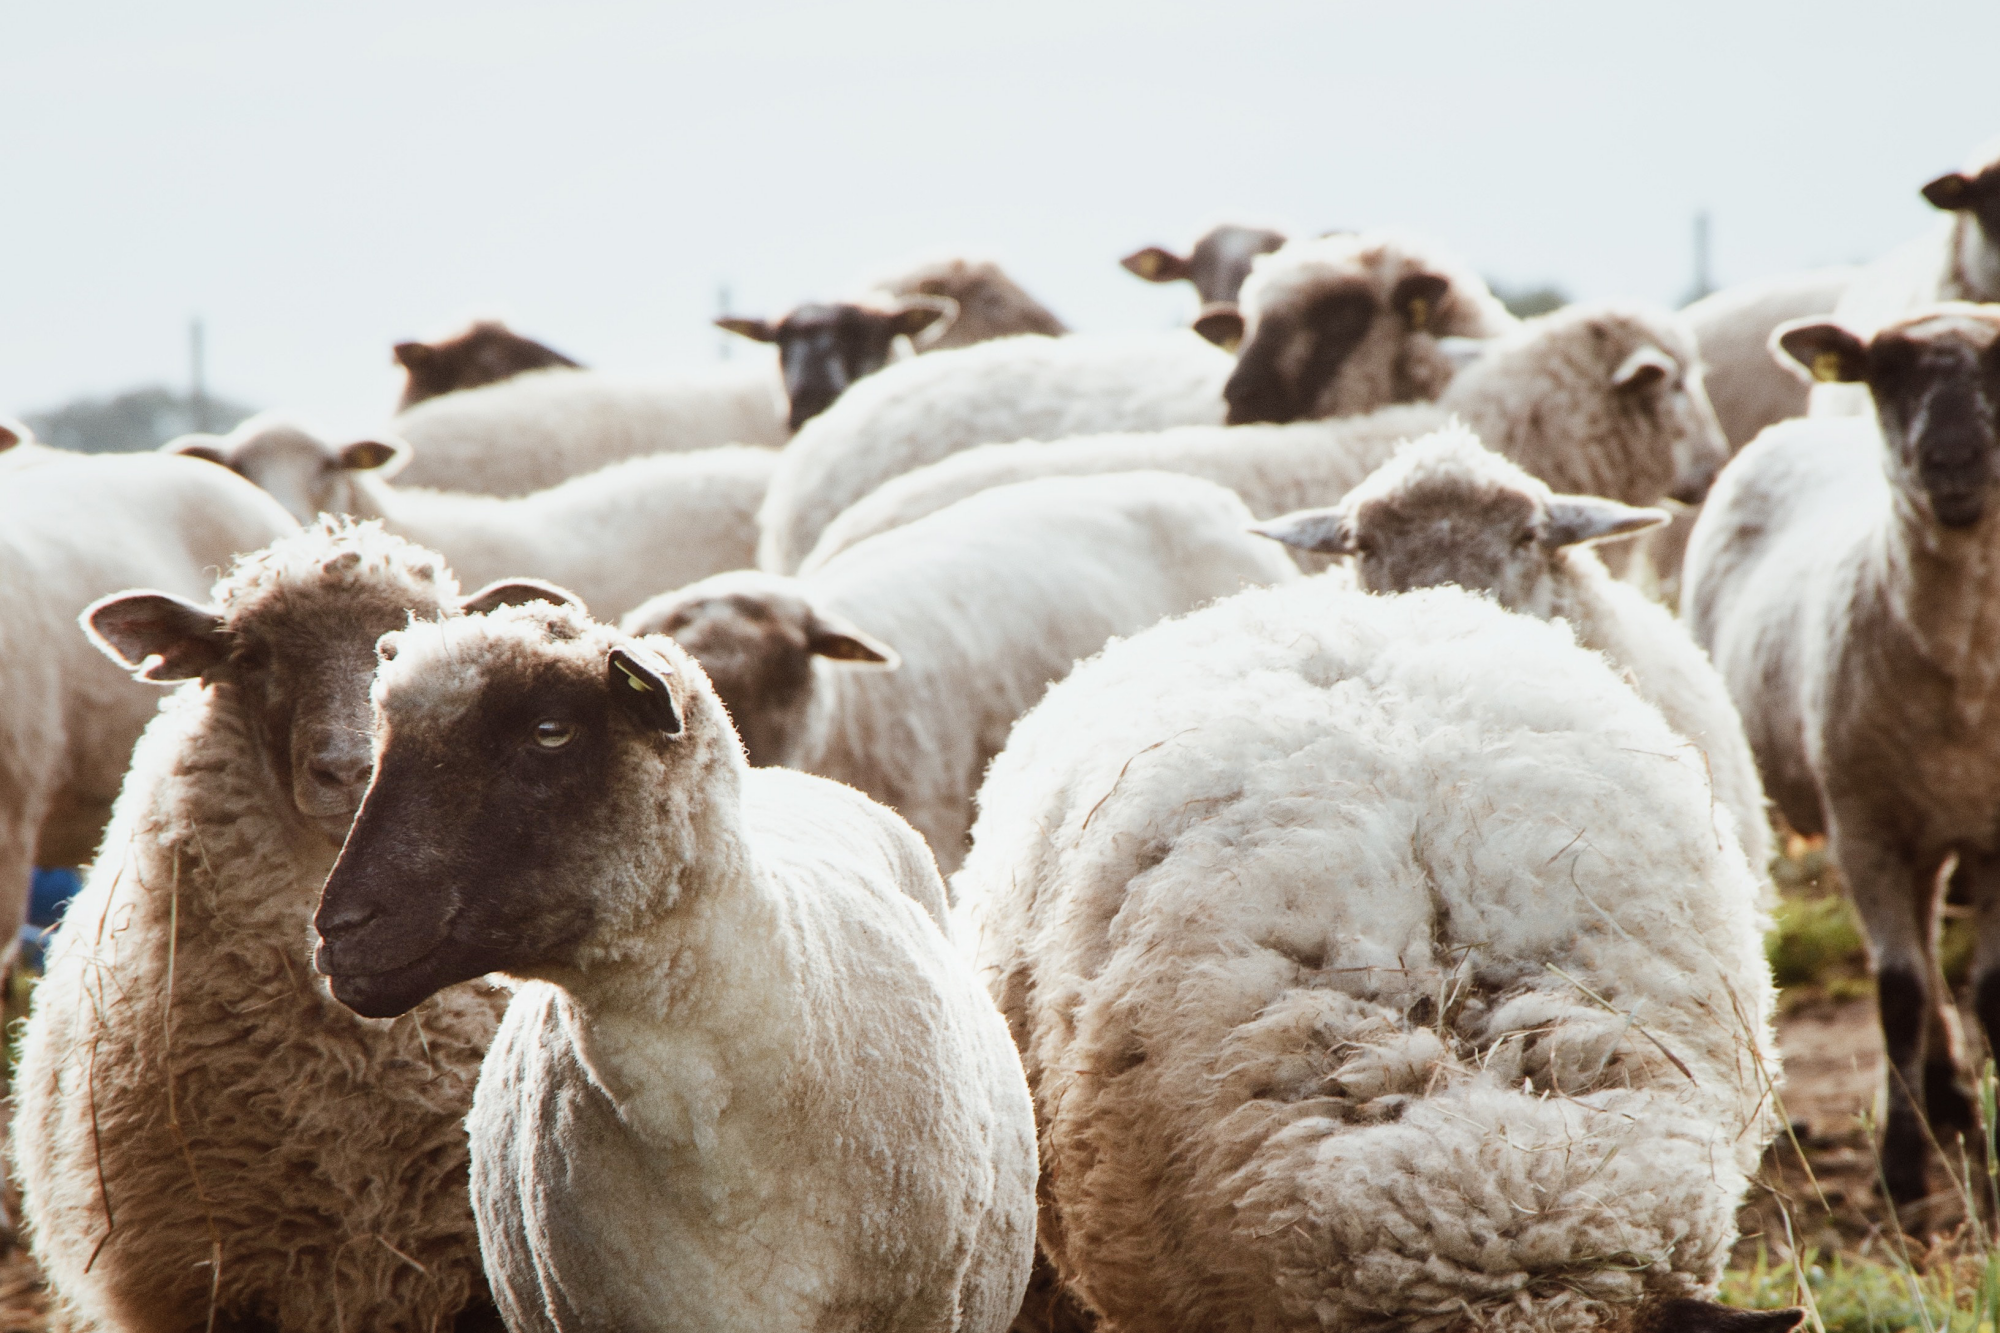 pieluchy wielorazowe owca